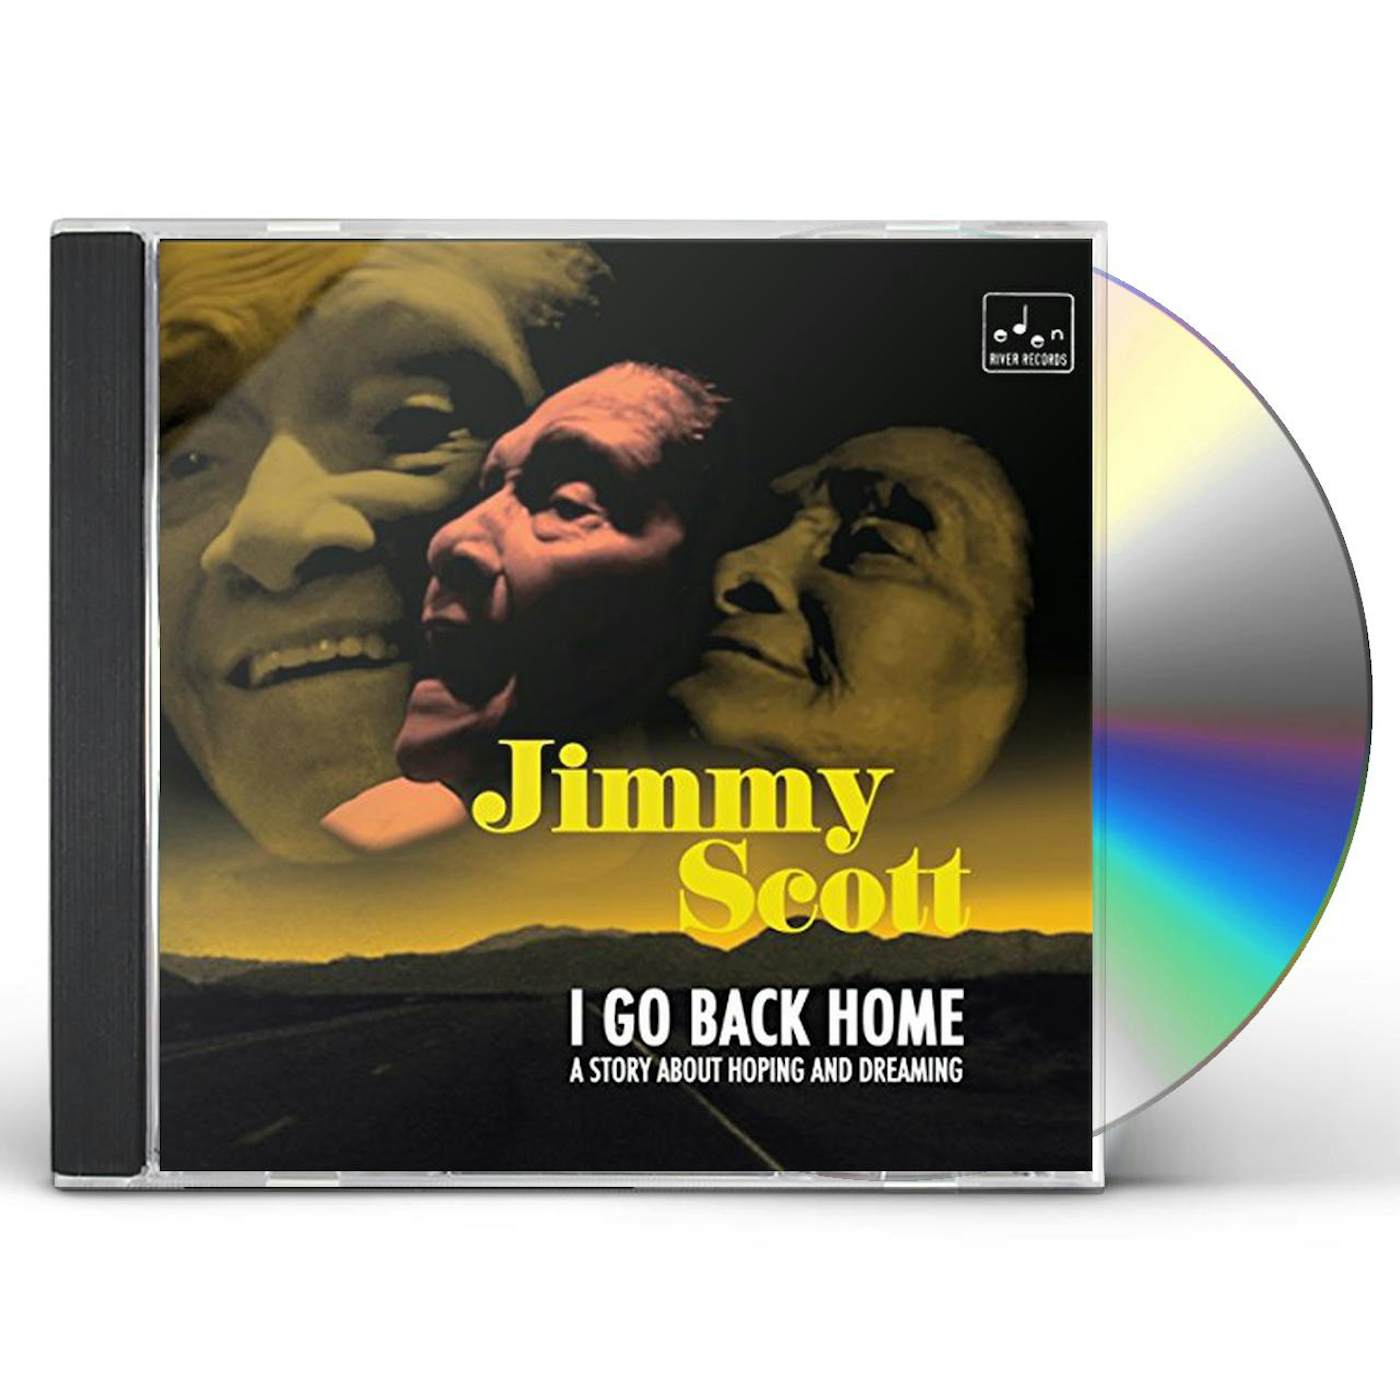 Jimmy Scott I GO BACK HOME CD